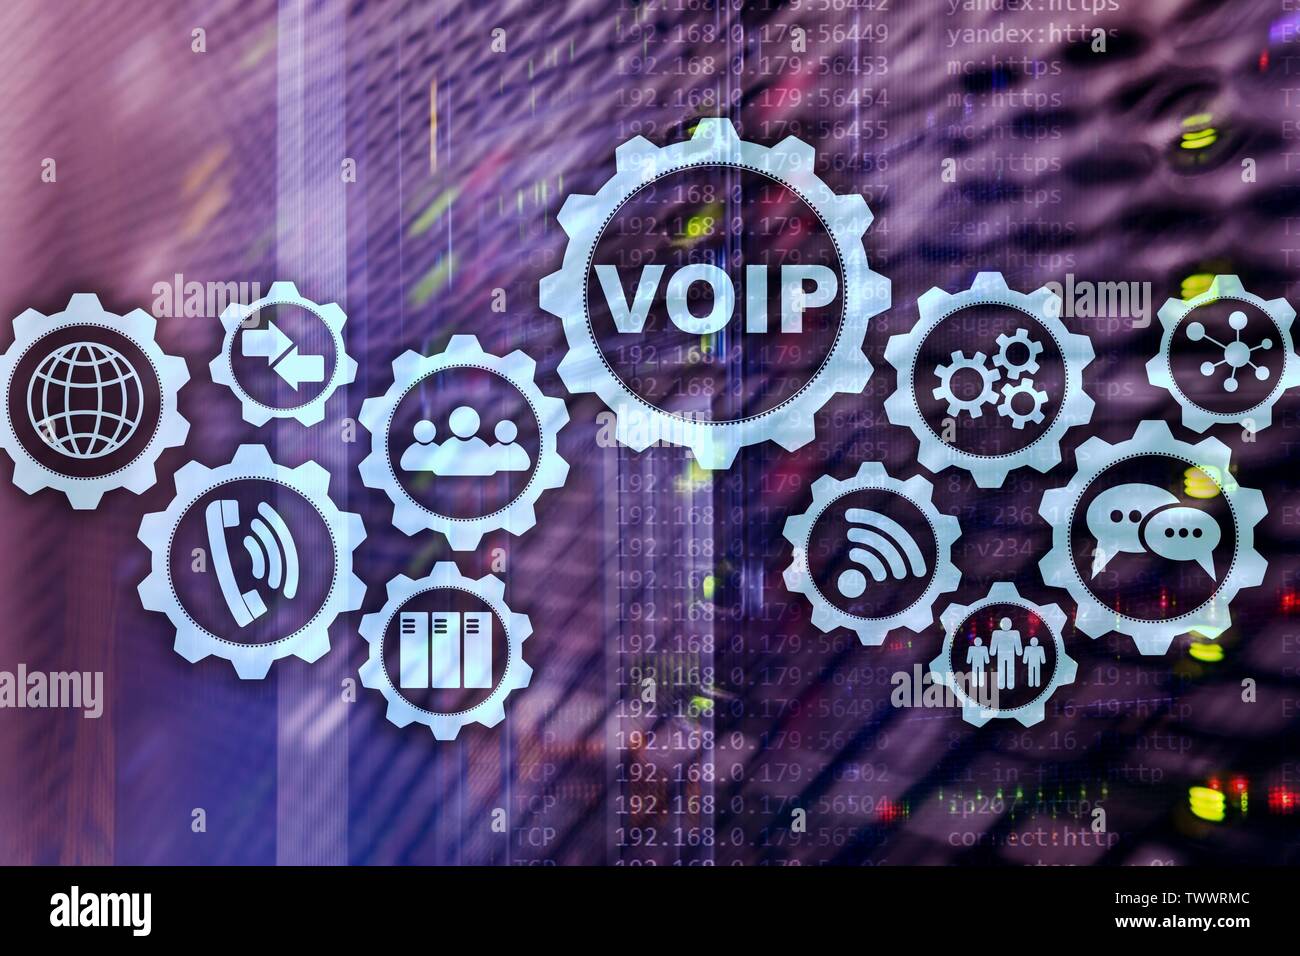 VoIP Voice over IP su schermo con una sfocatura sullo sfondo della sala server. Il concetto di Voice over Internet Protocol. Foto Stock